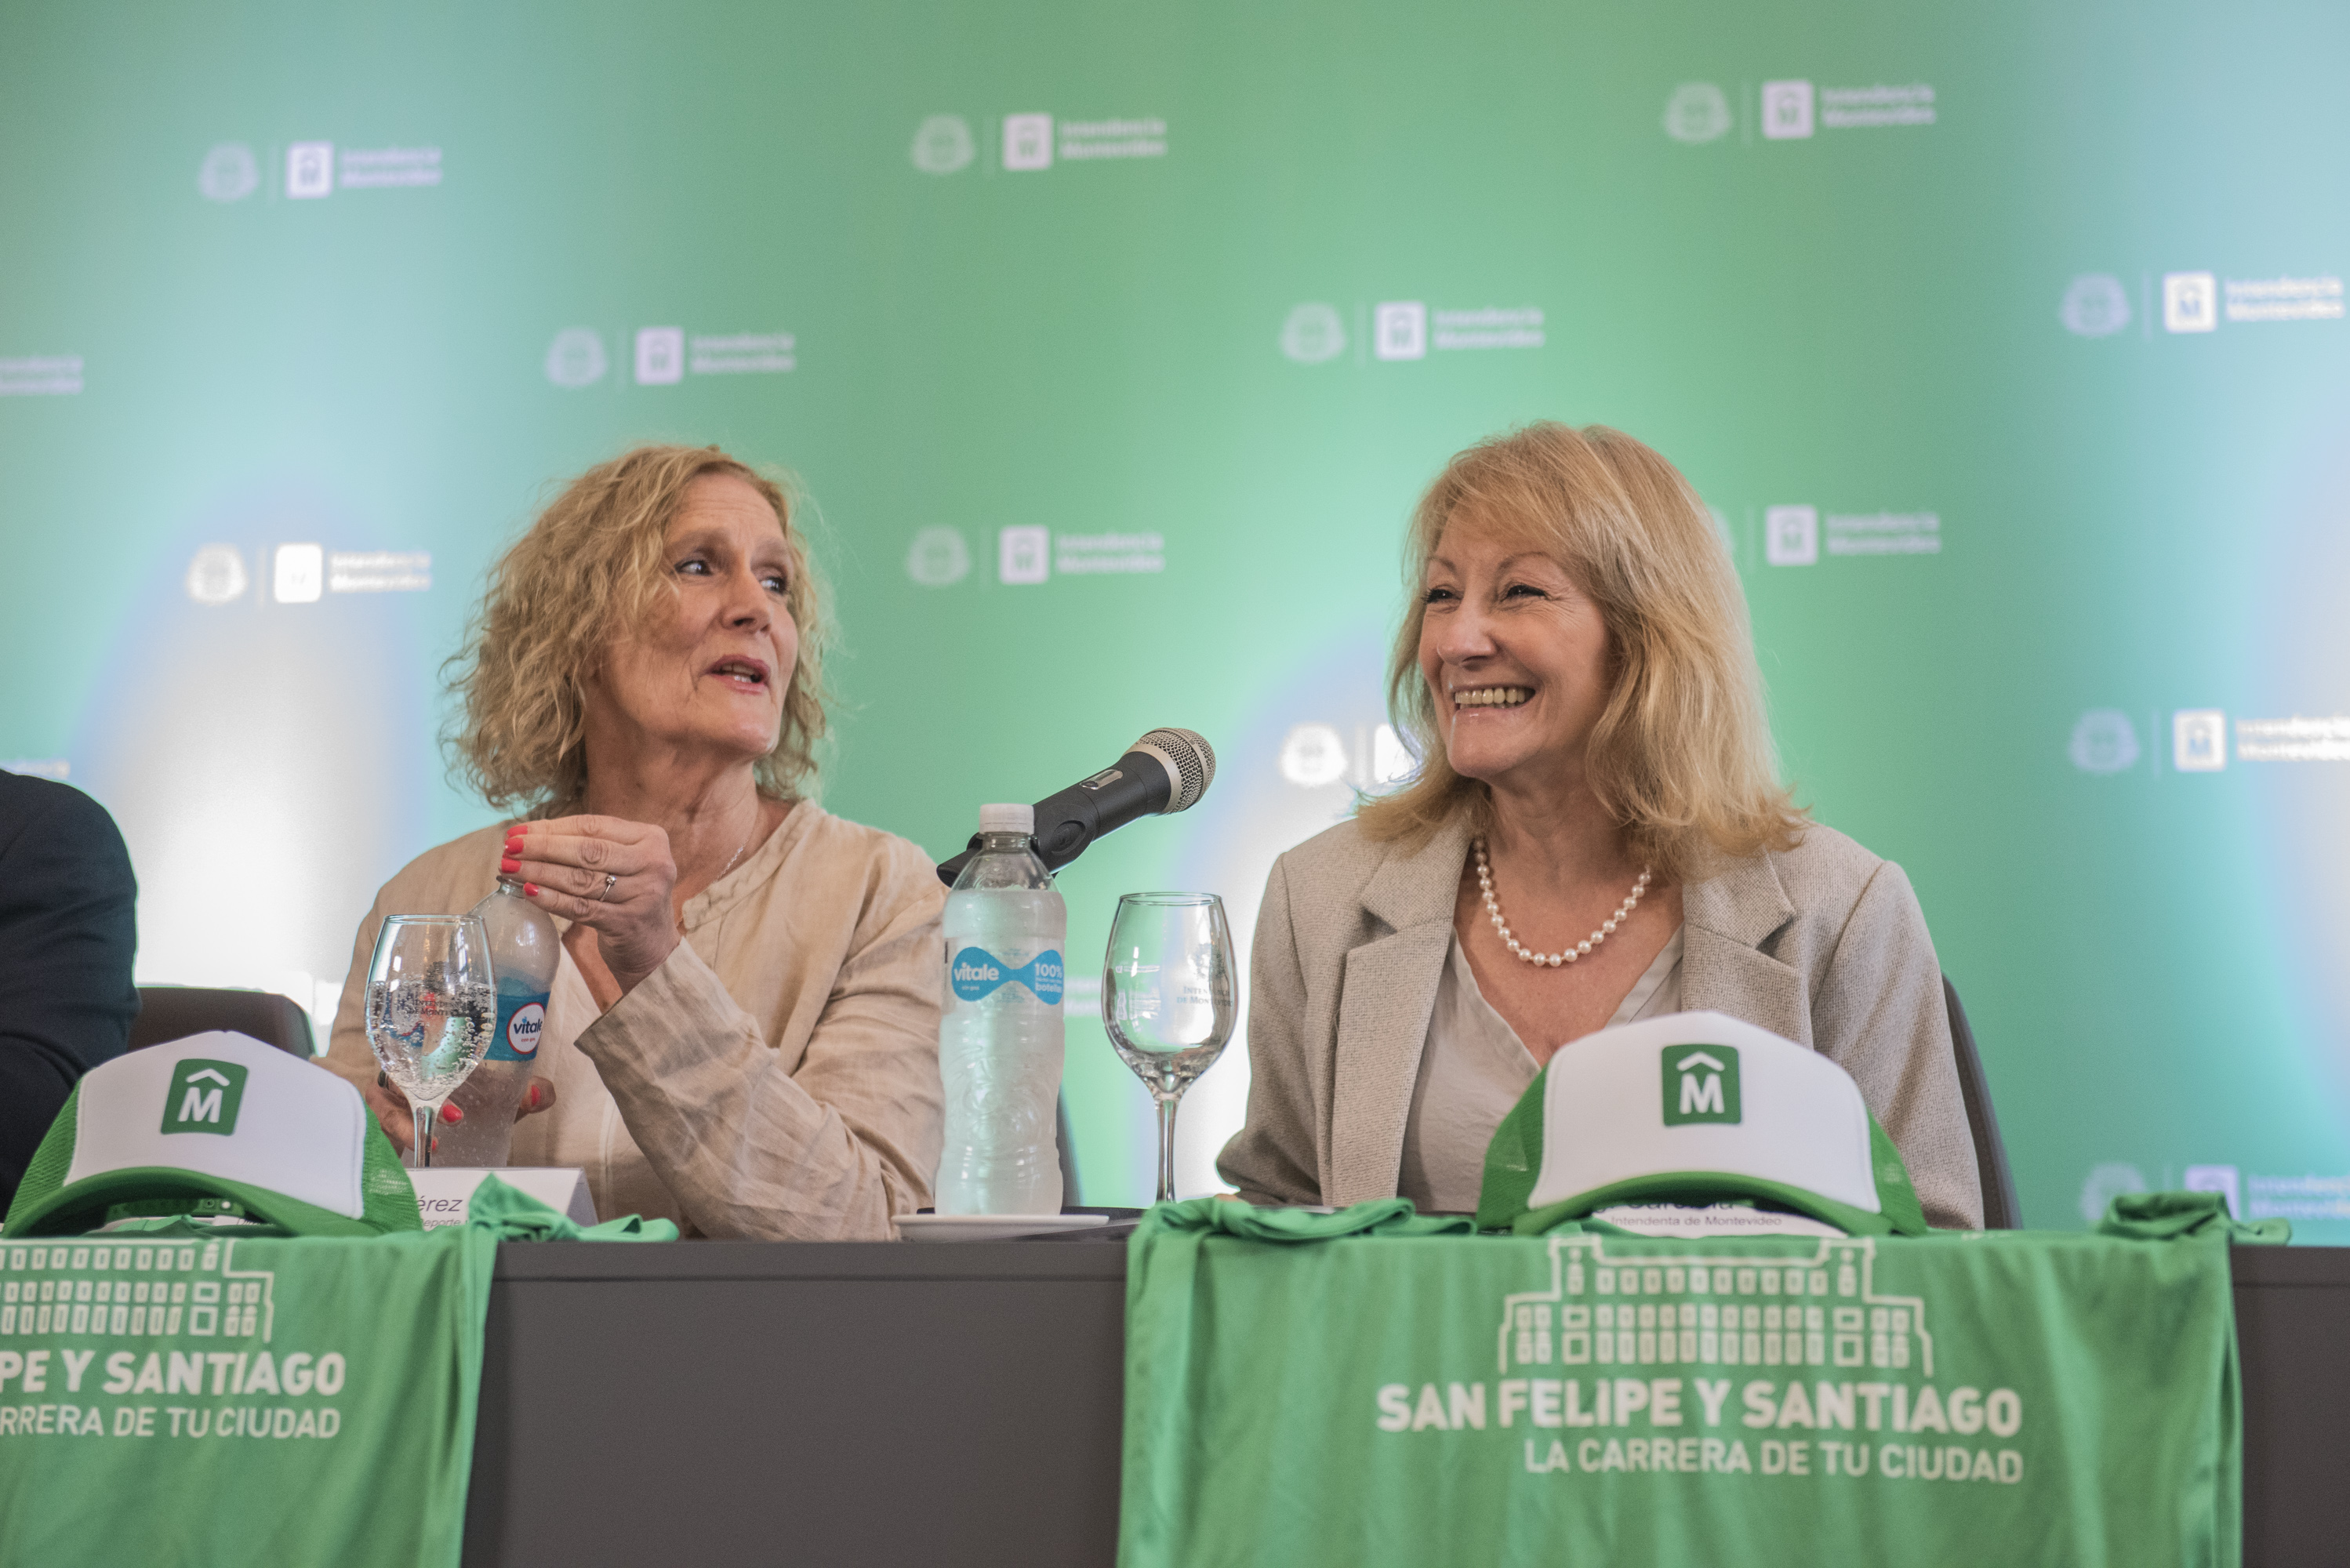 Conferencia de prensa por la 27ª edición de la carrera San Felipe y Santiago